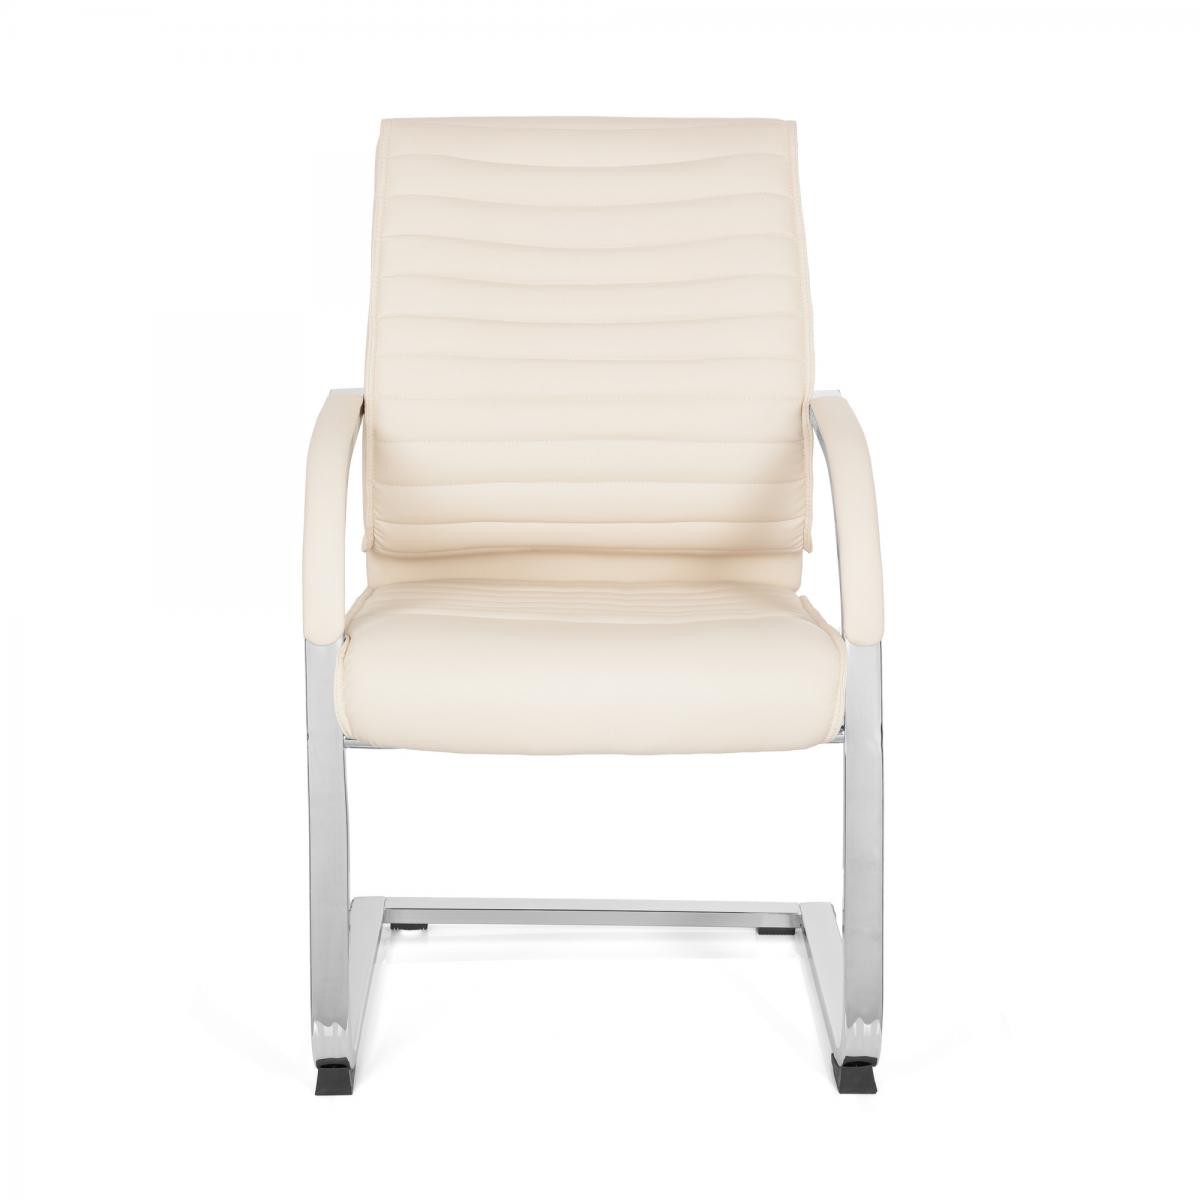 Hjh Office - Chaise visiteur / Chaise à piètement luge / VISITER CL120 simili cuir creme - Chaises